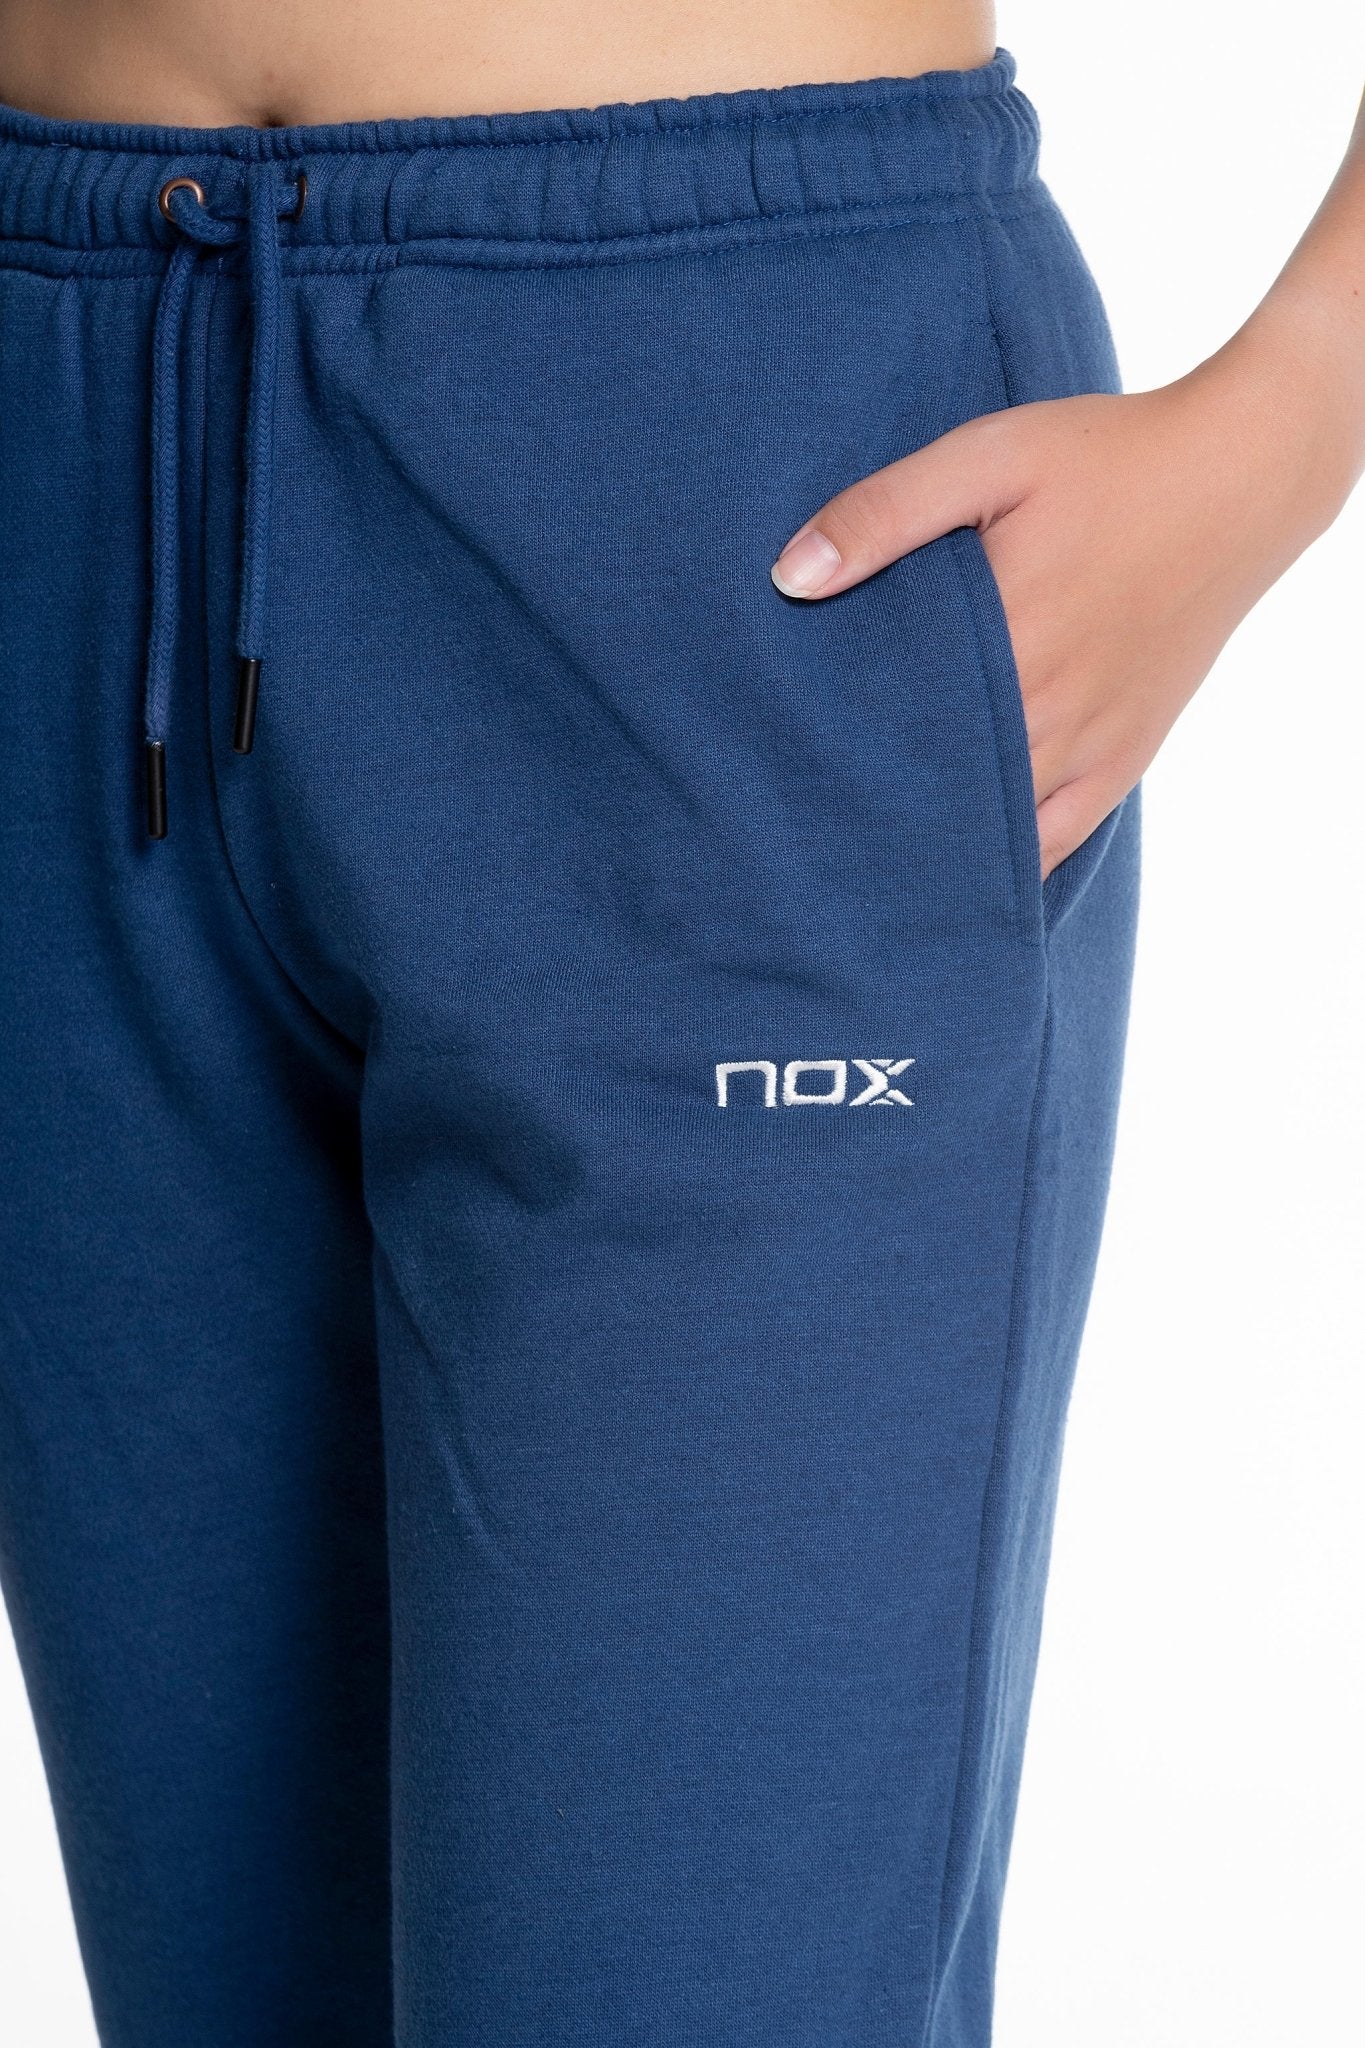 Pantalón chandal mujer BASIC - CASUAL azul marino - NOX